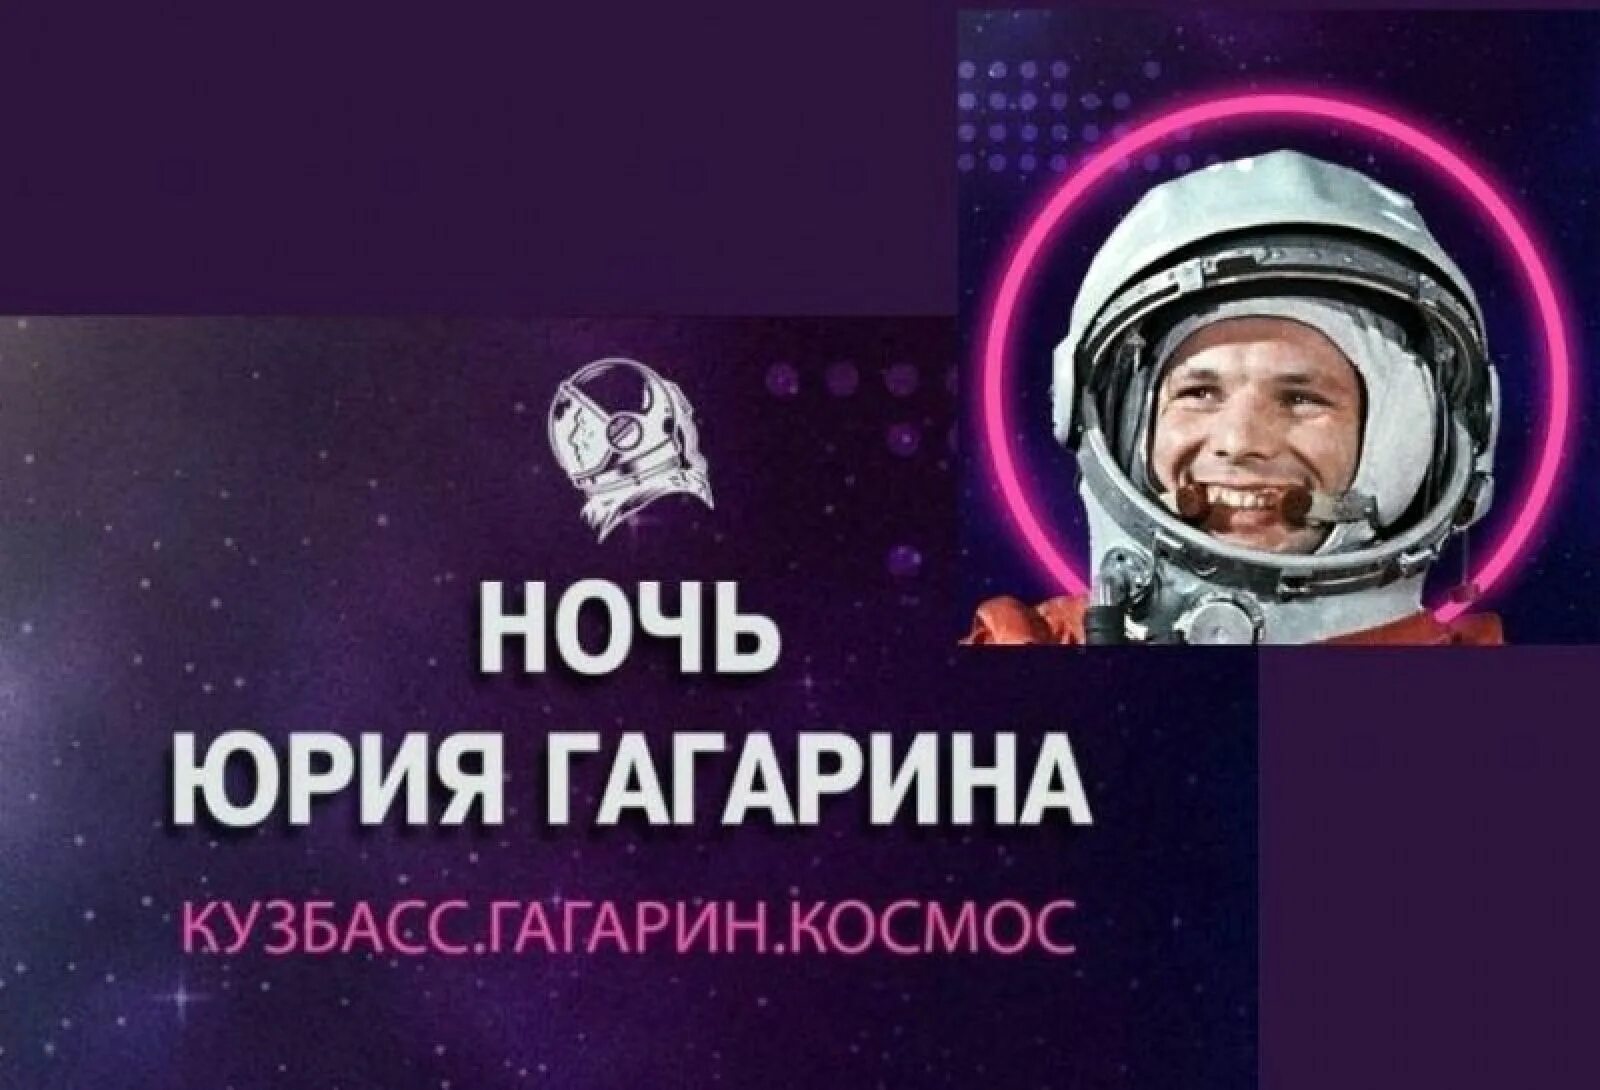 День космонавтики кемерово. Международный фестиваль Юрия Гагарина 2022. Фестиваль ночь Юрия Гагарина в Кемерово. Международный день космонавтики.